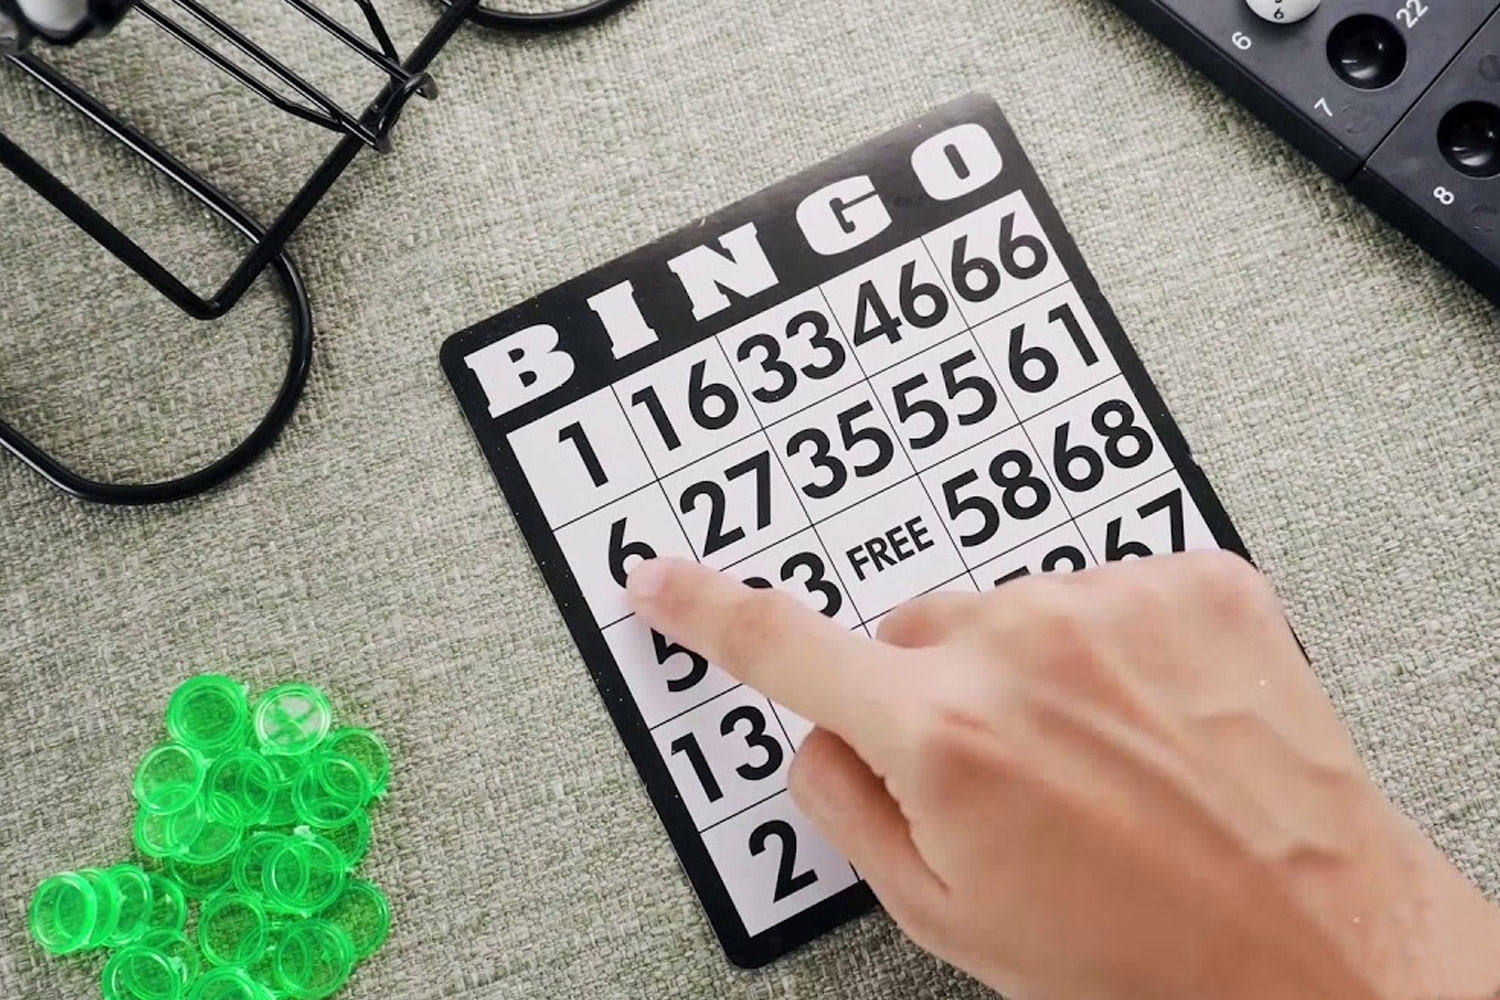 jogo bingo paga mesmo